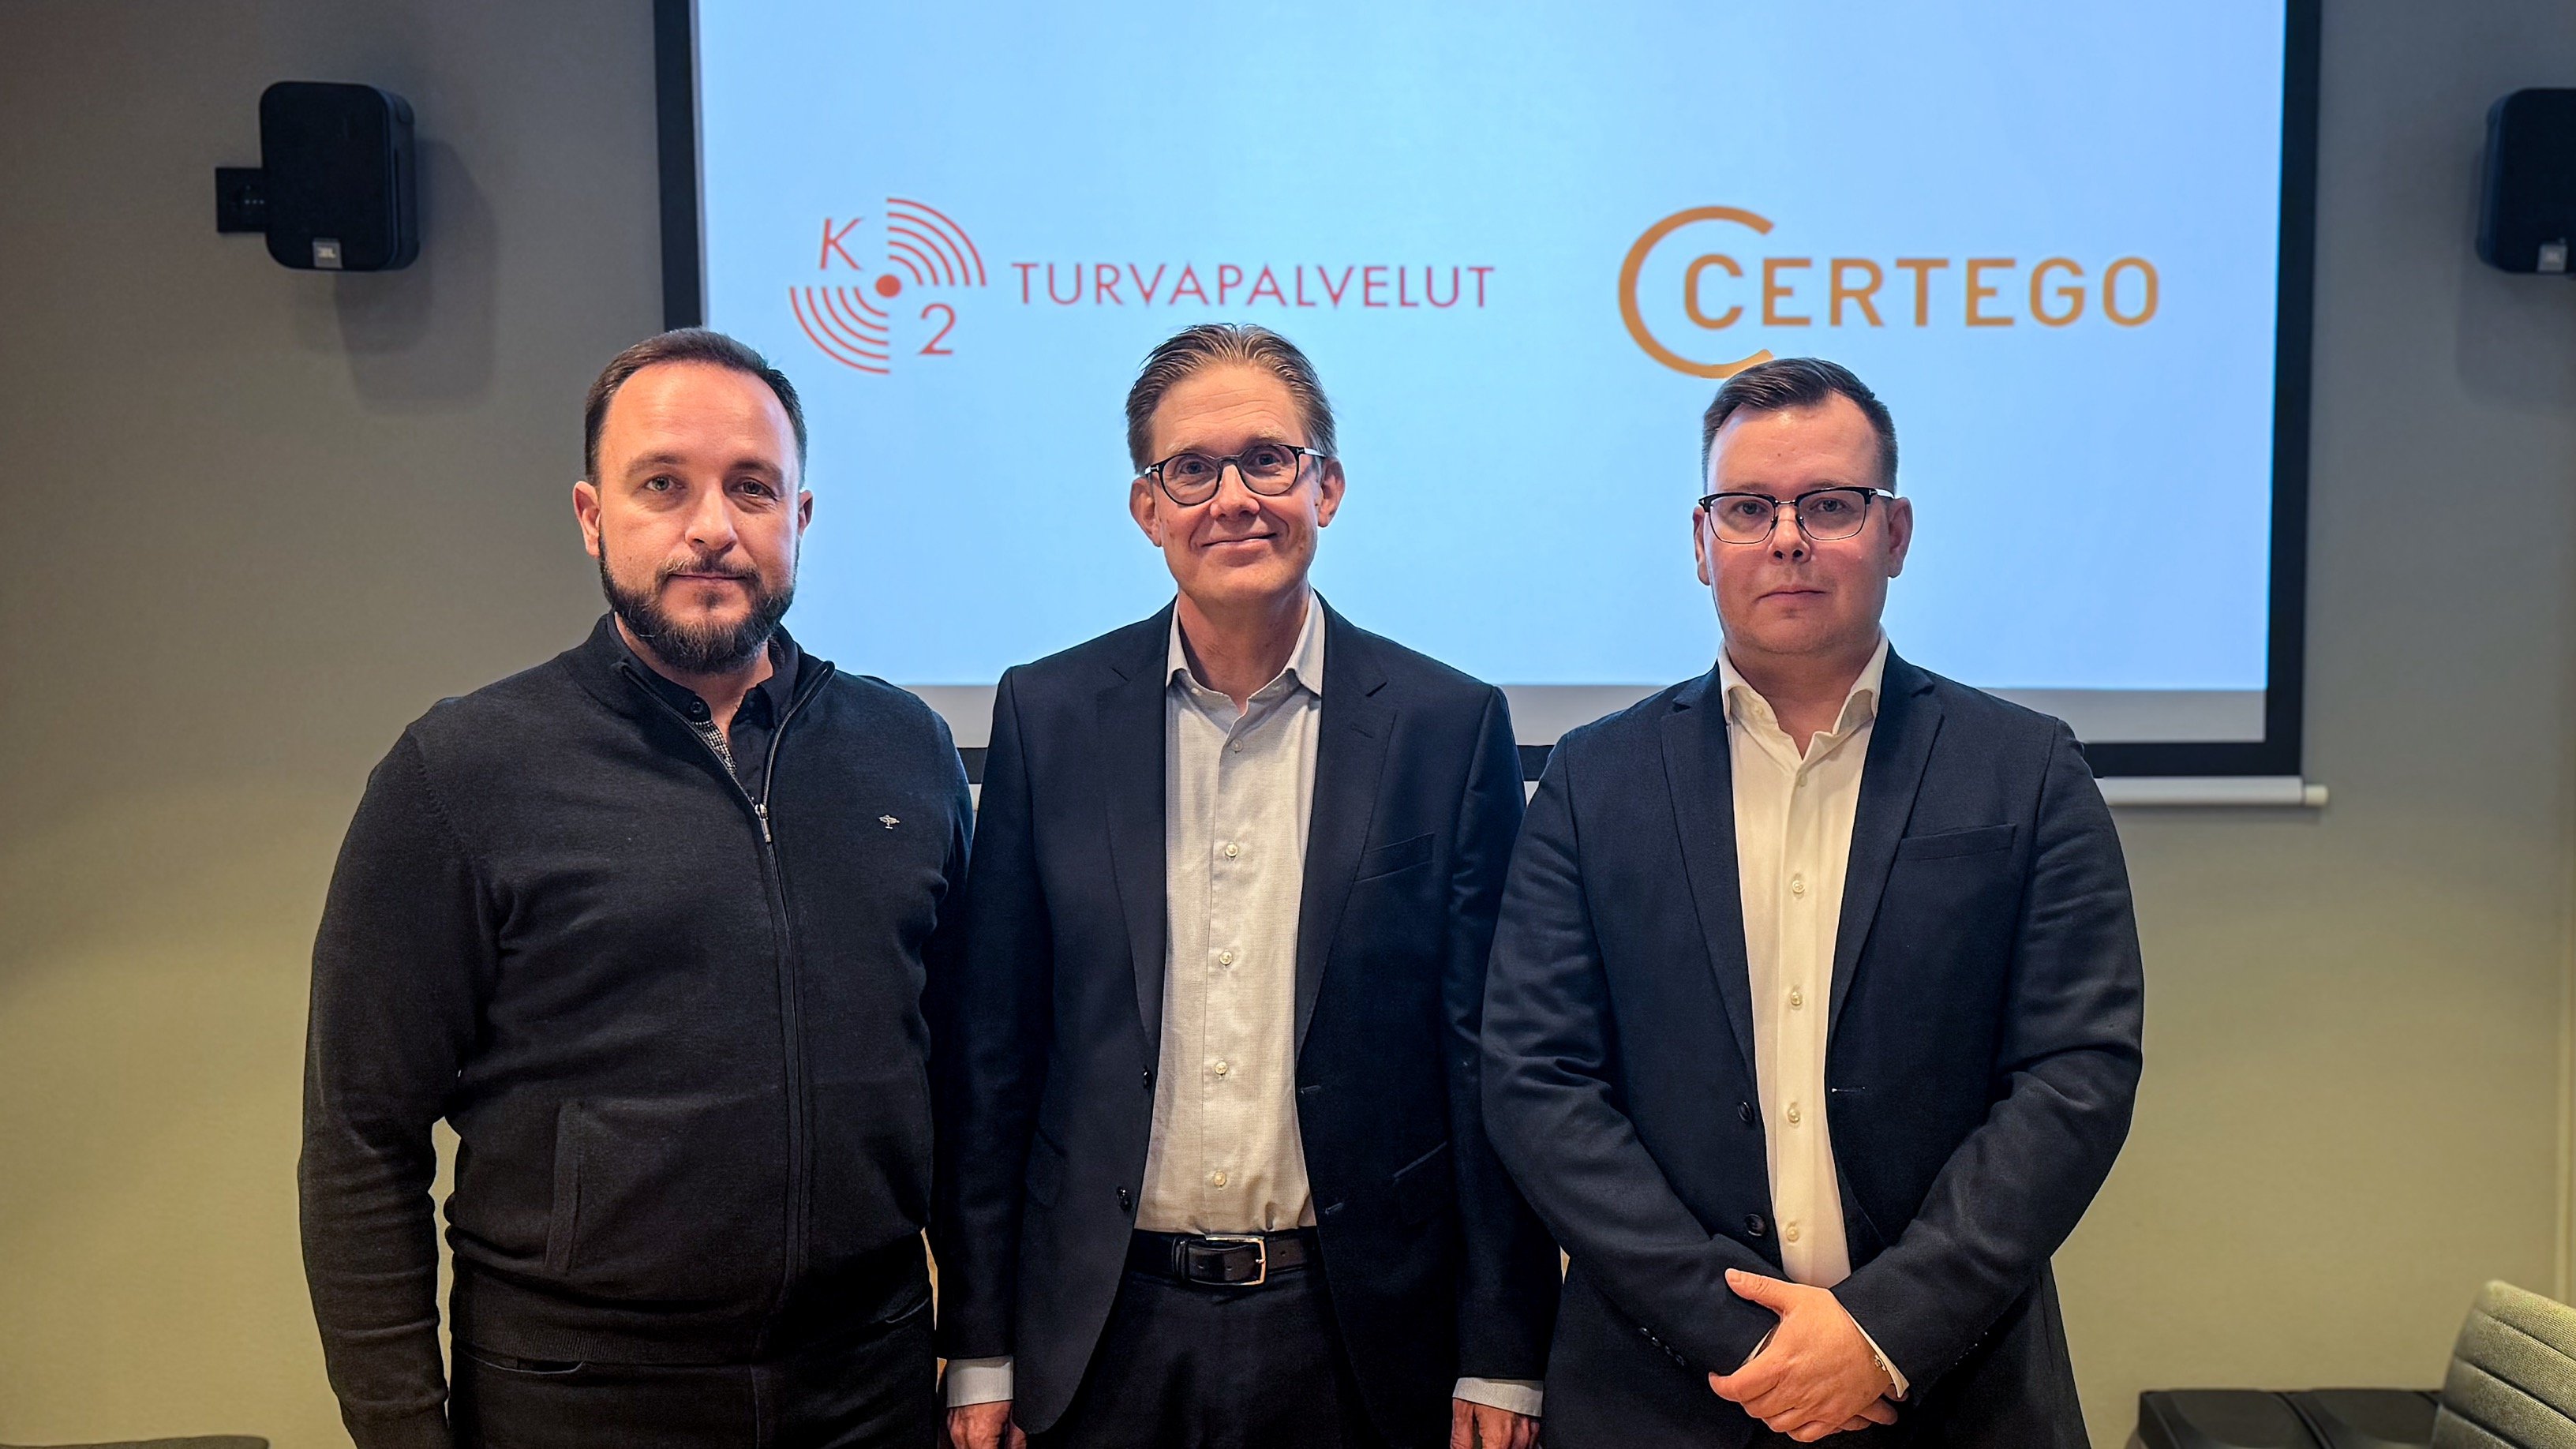 CERTEGO acquires K2 Turvapalvelut in Finland